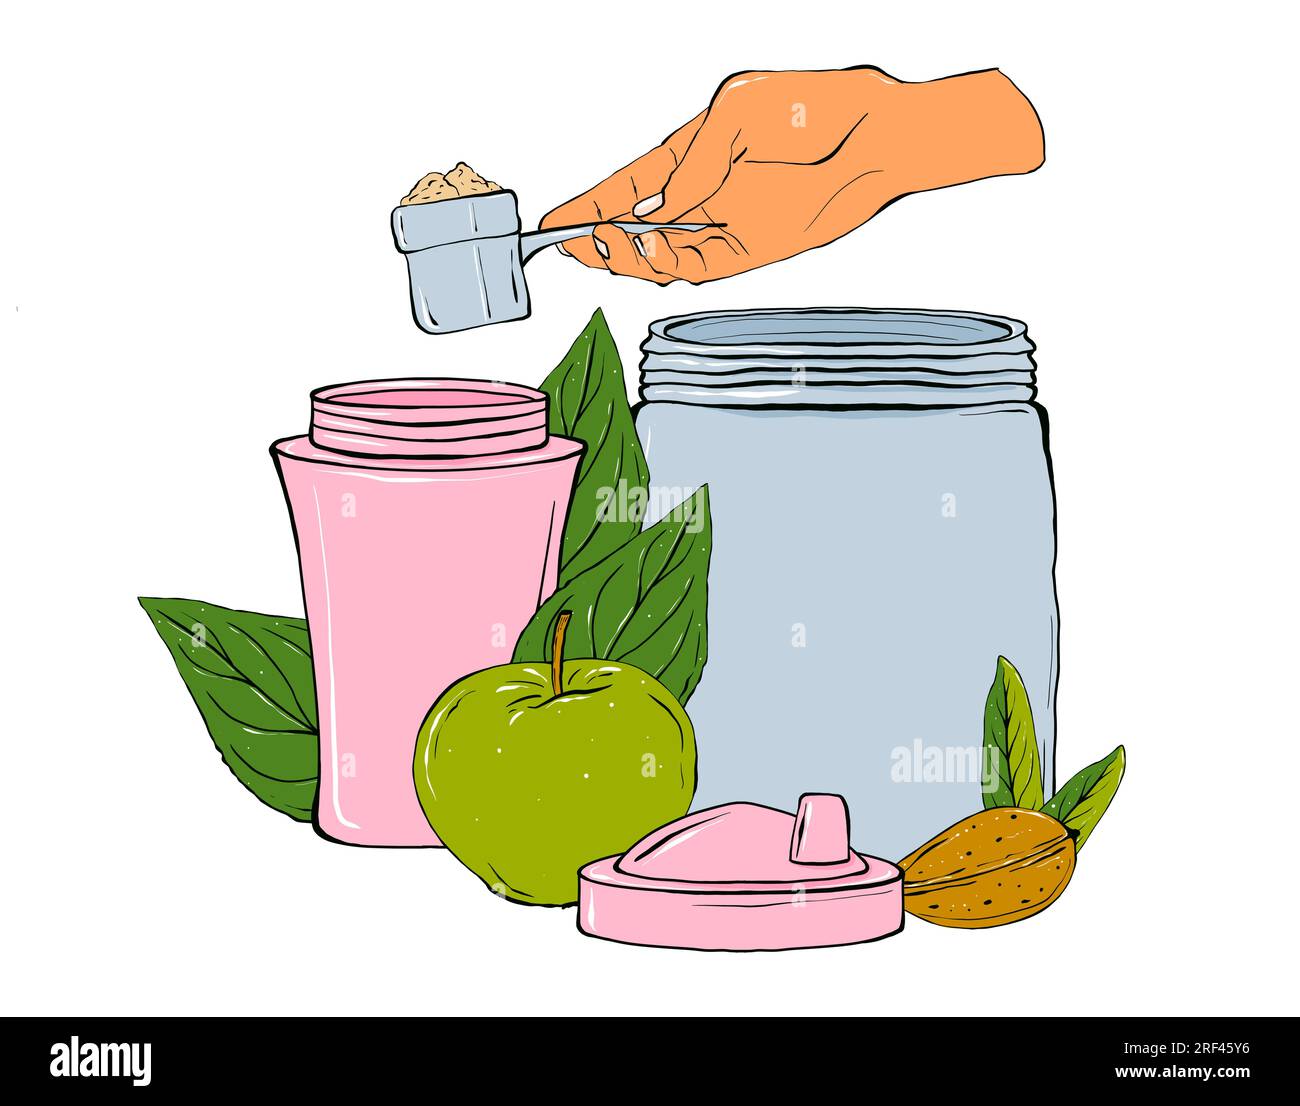 Sportnahrung, Fruchtzusammensetzungen, Schüttler, Nahrungsergänzungsmittel. Handgezeichnete Illustration. Stockfoto